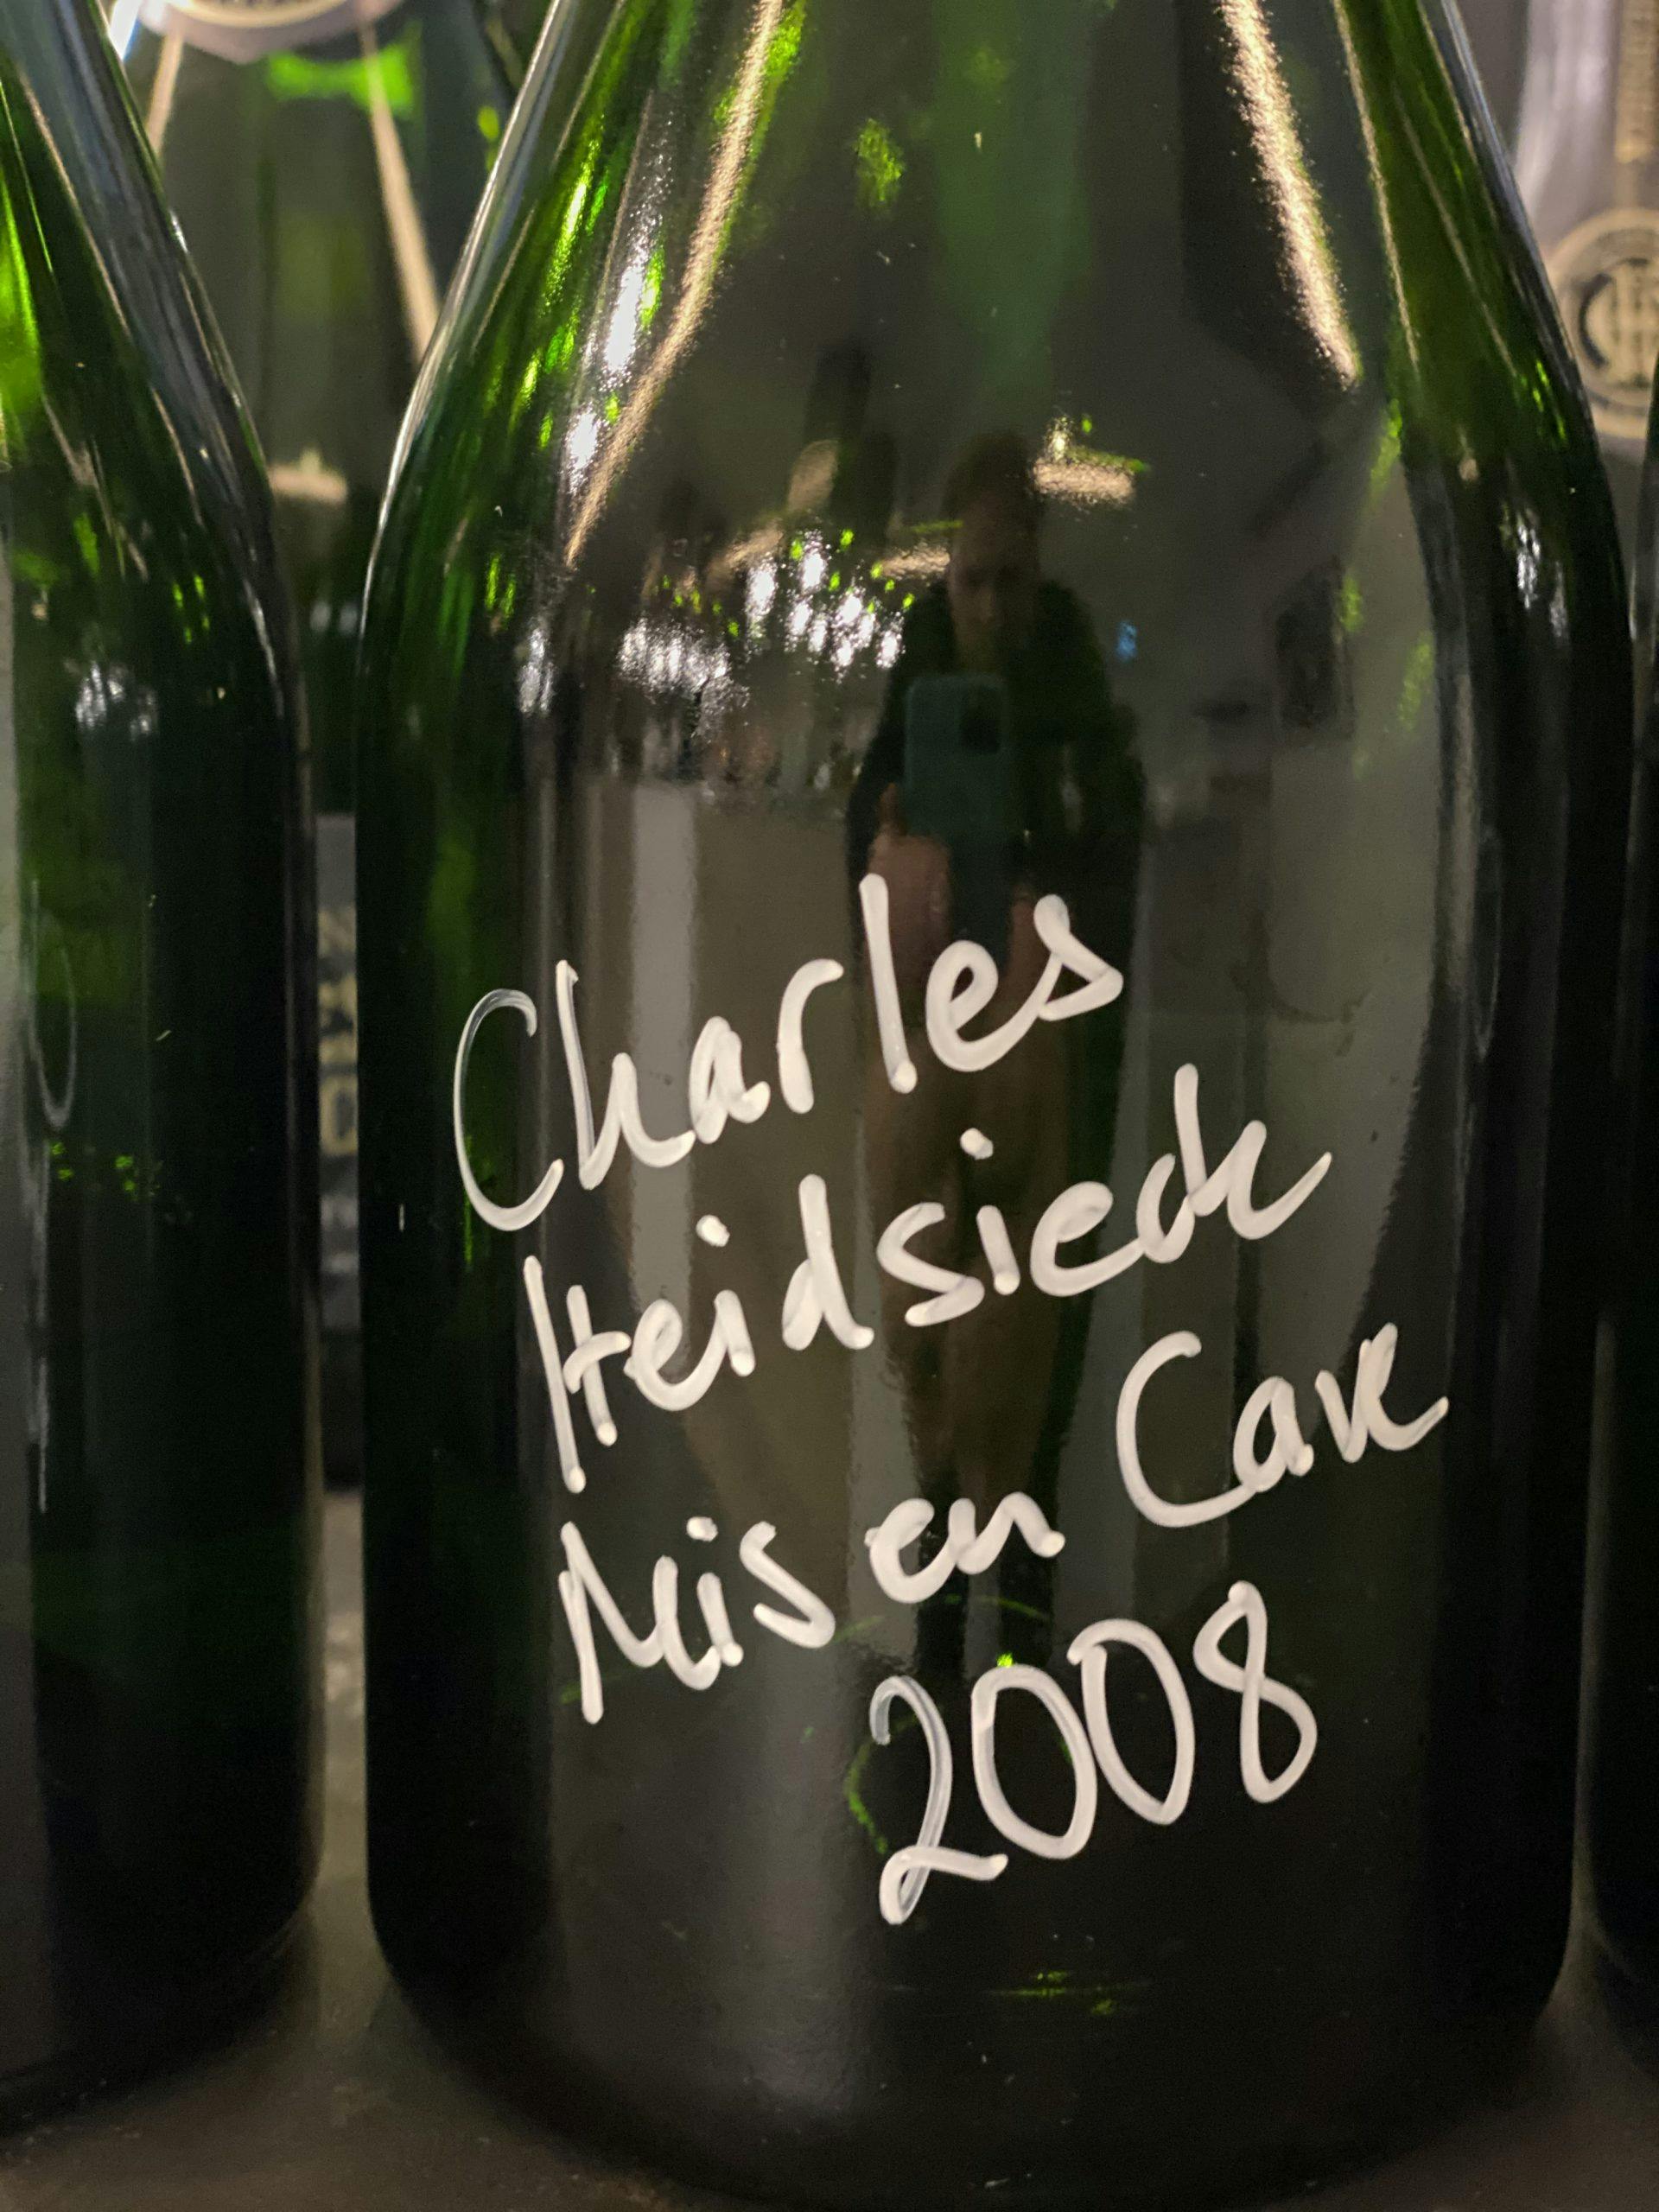 Champagne Charles Heidsieck Mis en Cave 2008